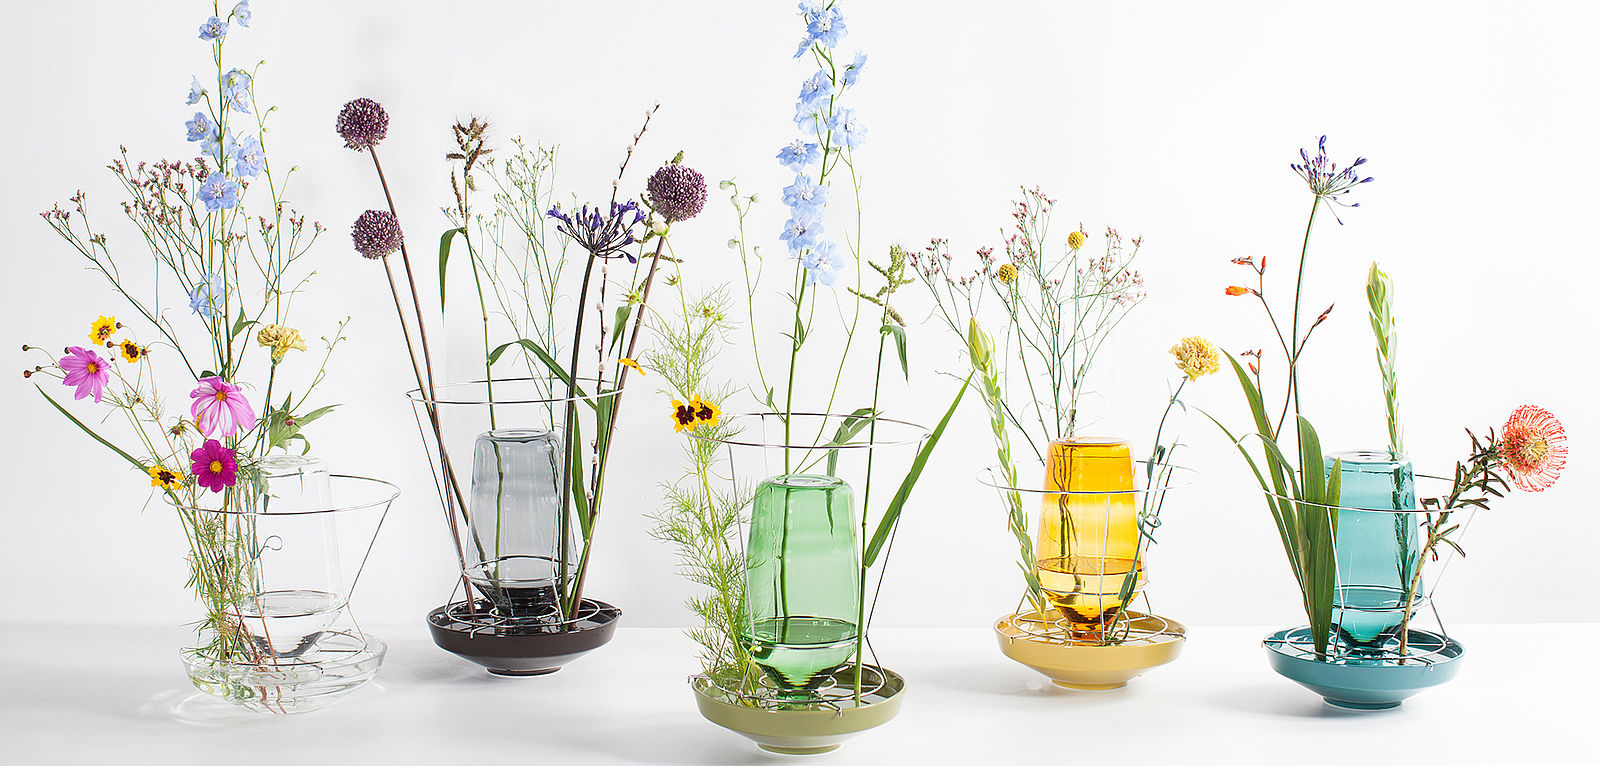 POPO Möbel Bremen - Vasen 'Hiddenvases' in 5 verschiedenen Farben von valerie objects